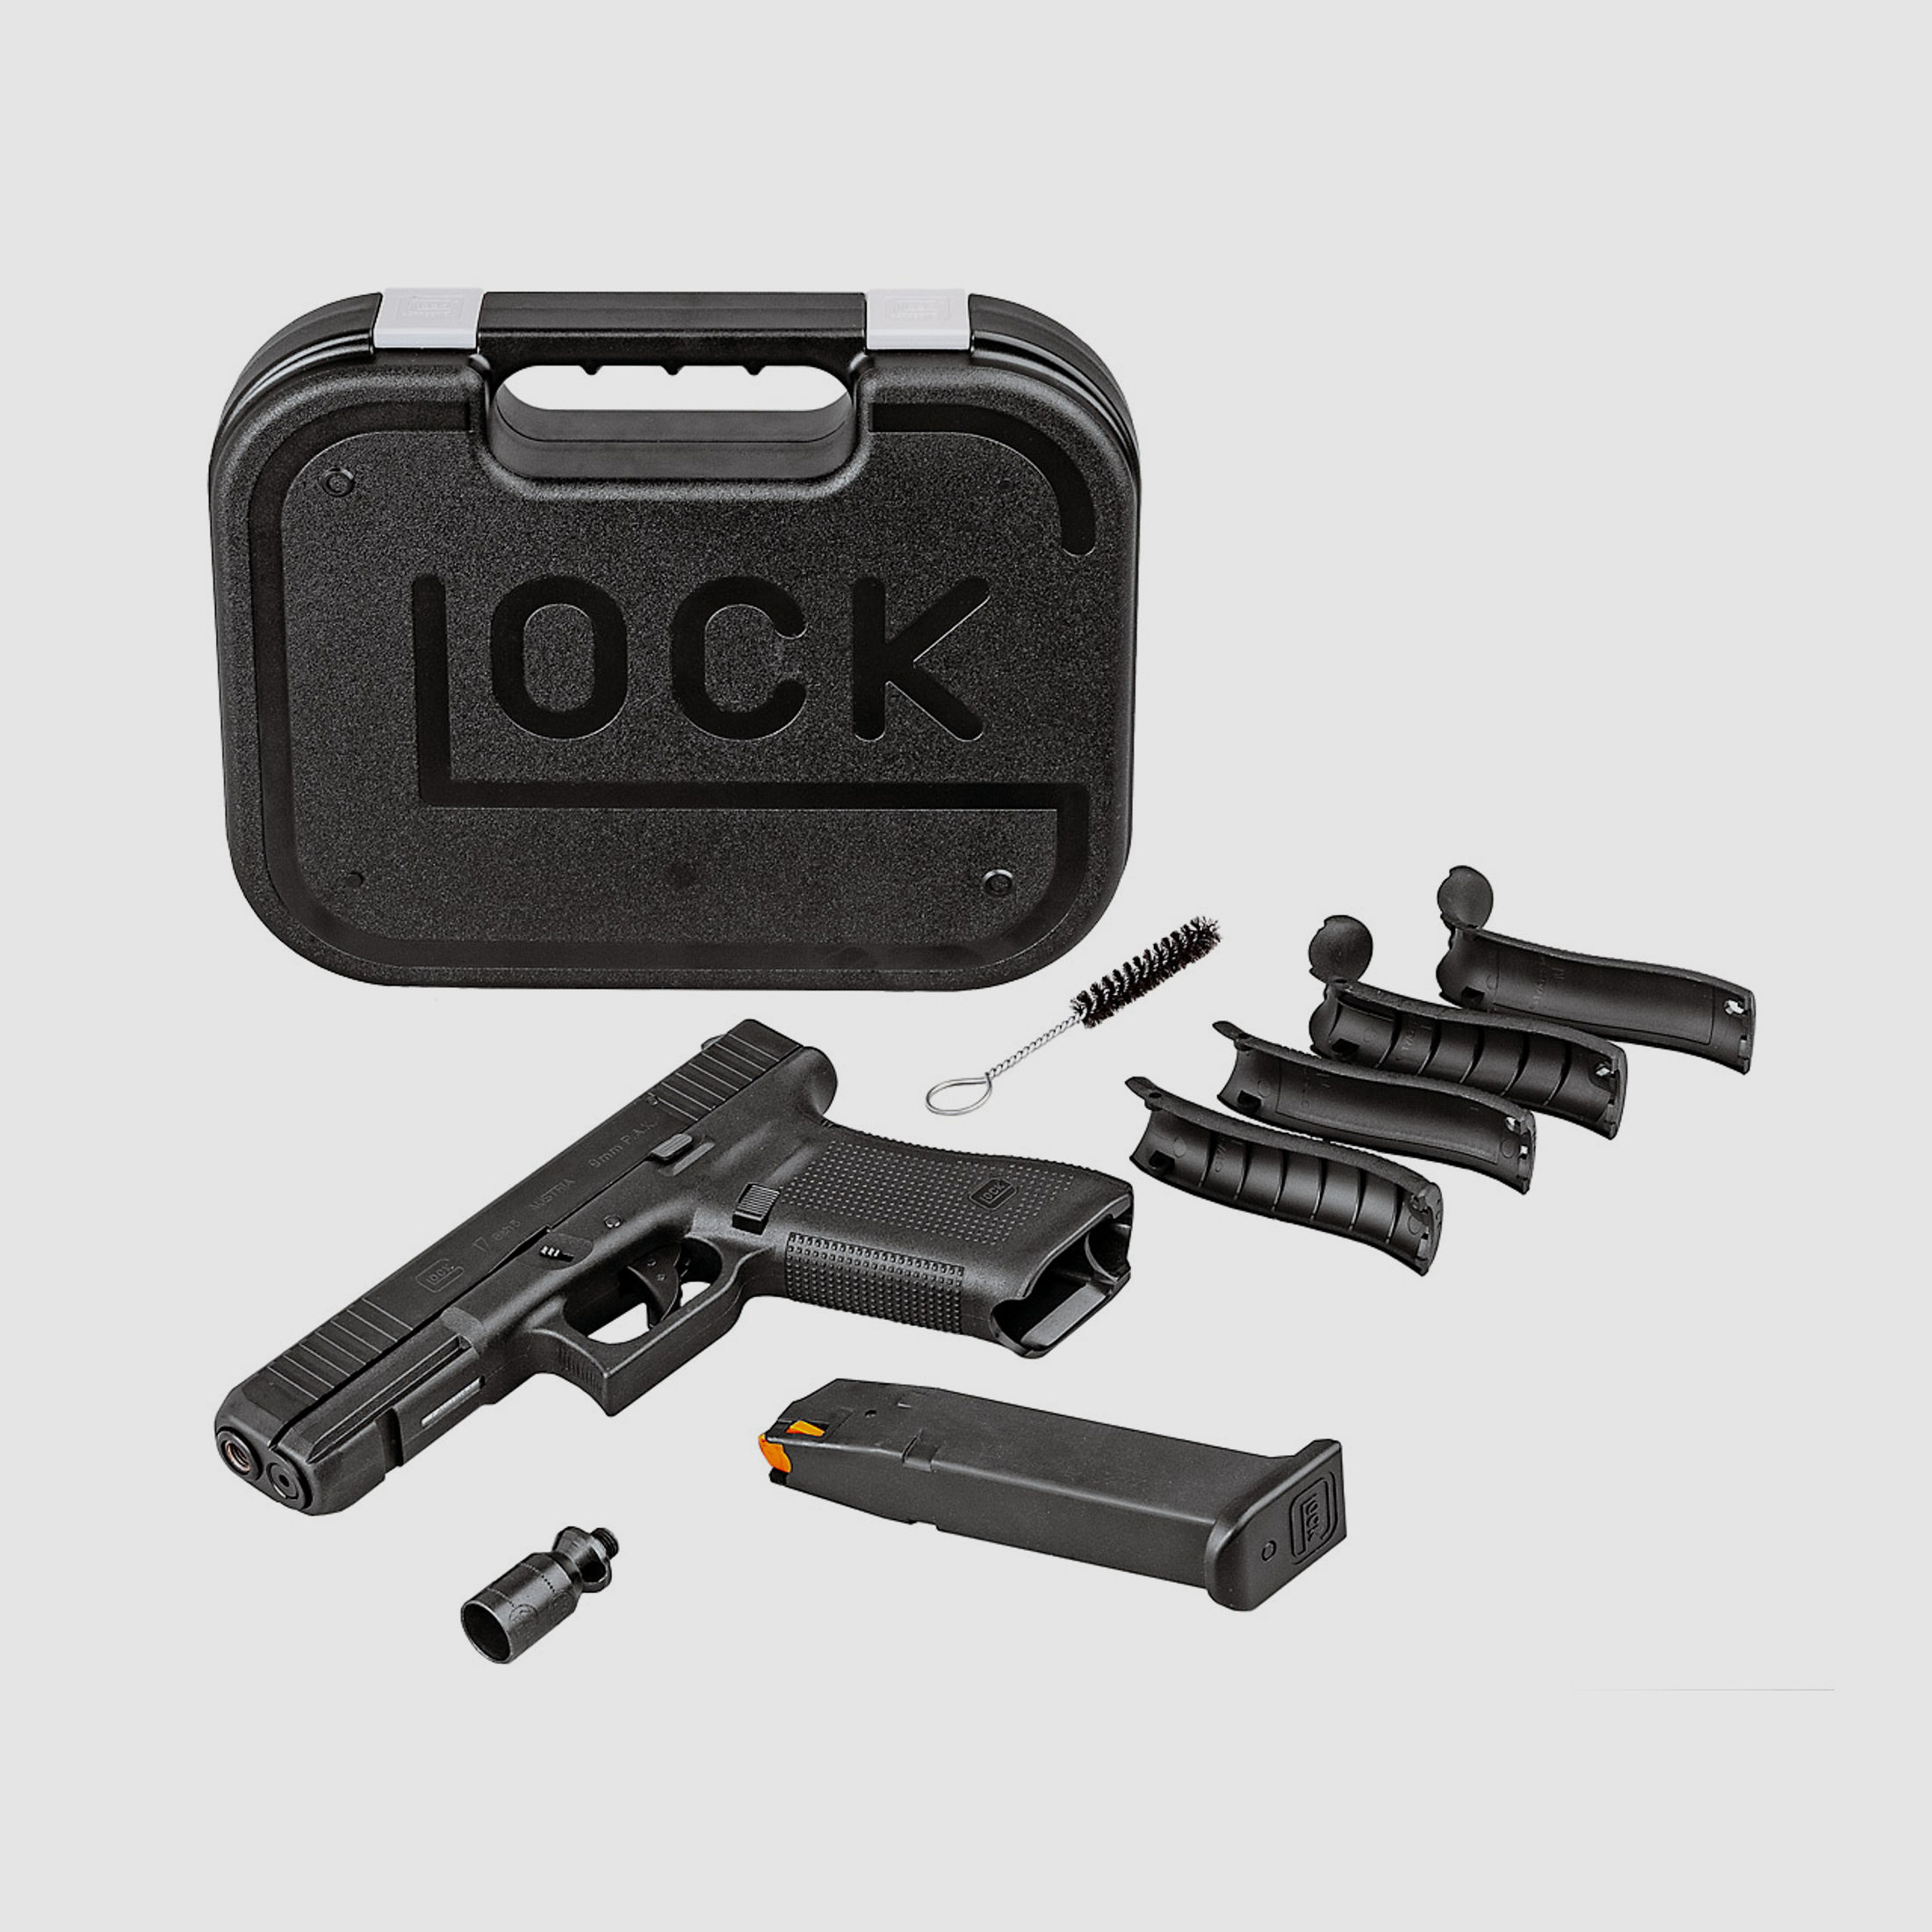 Schreckschuss Pistole Umarex Glock 17 Gen5 First Edition Kaliber 9 mm P.A.K. (P18)